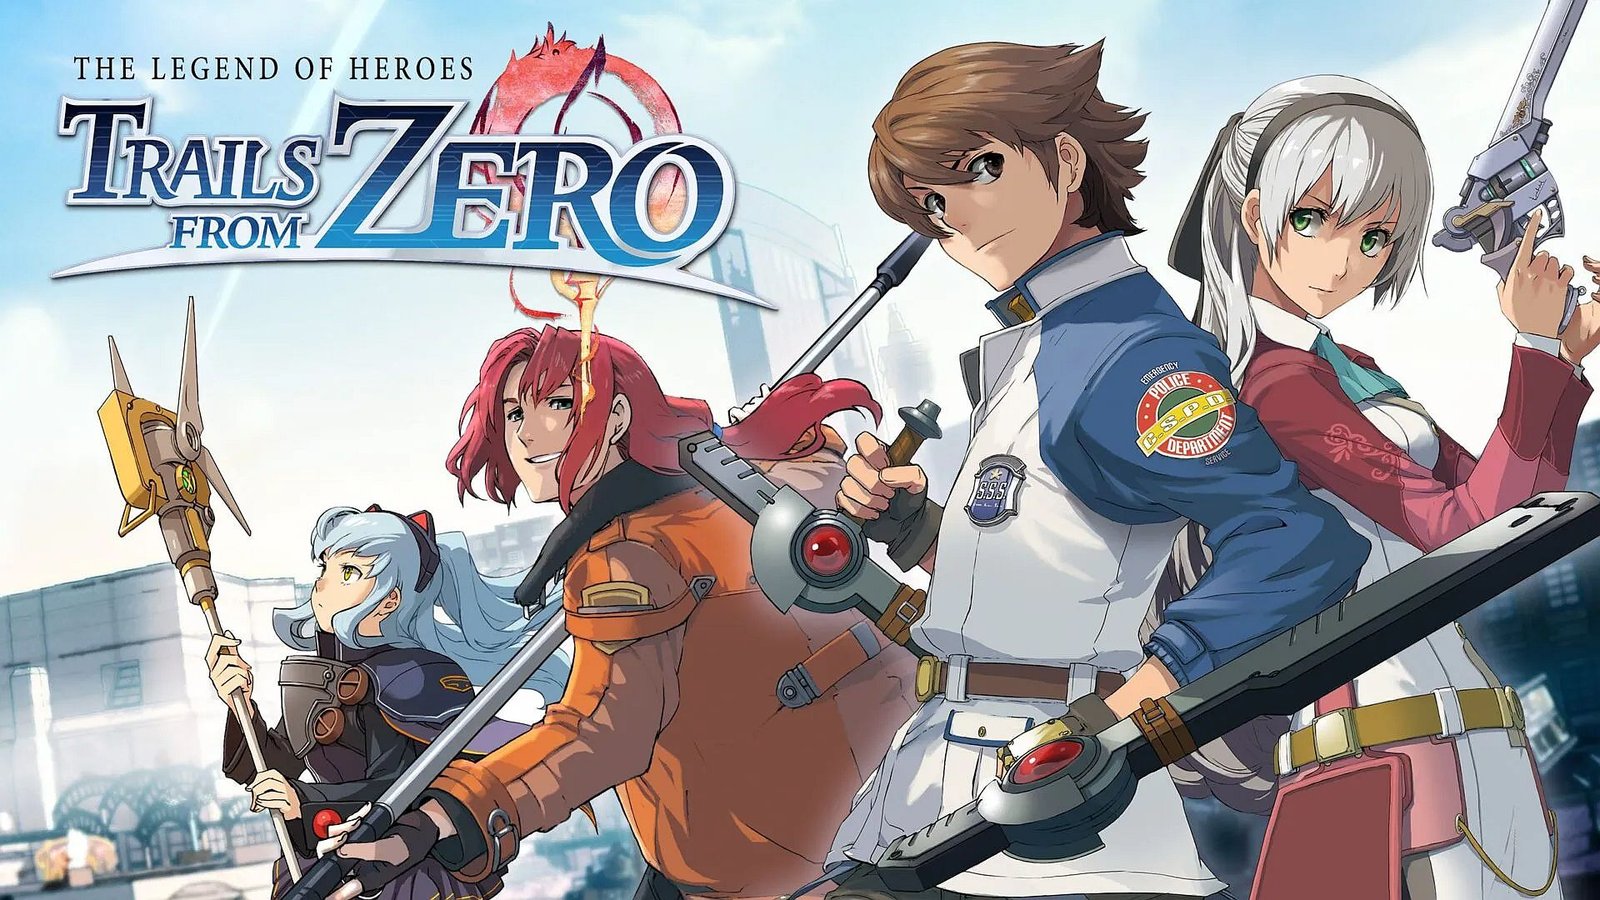 لعبة The Legend of Heroes: Trails from Zero متوفرة حاليًا بنسختها الغربية